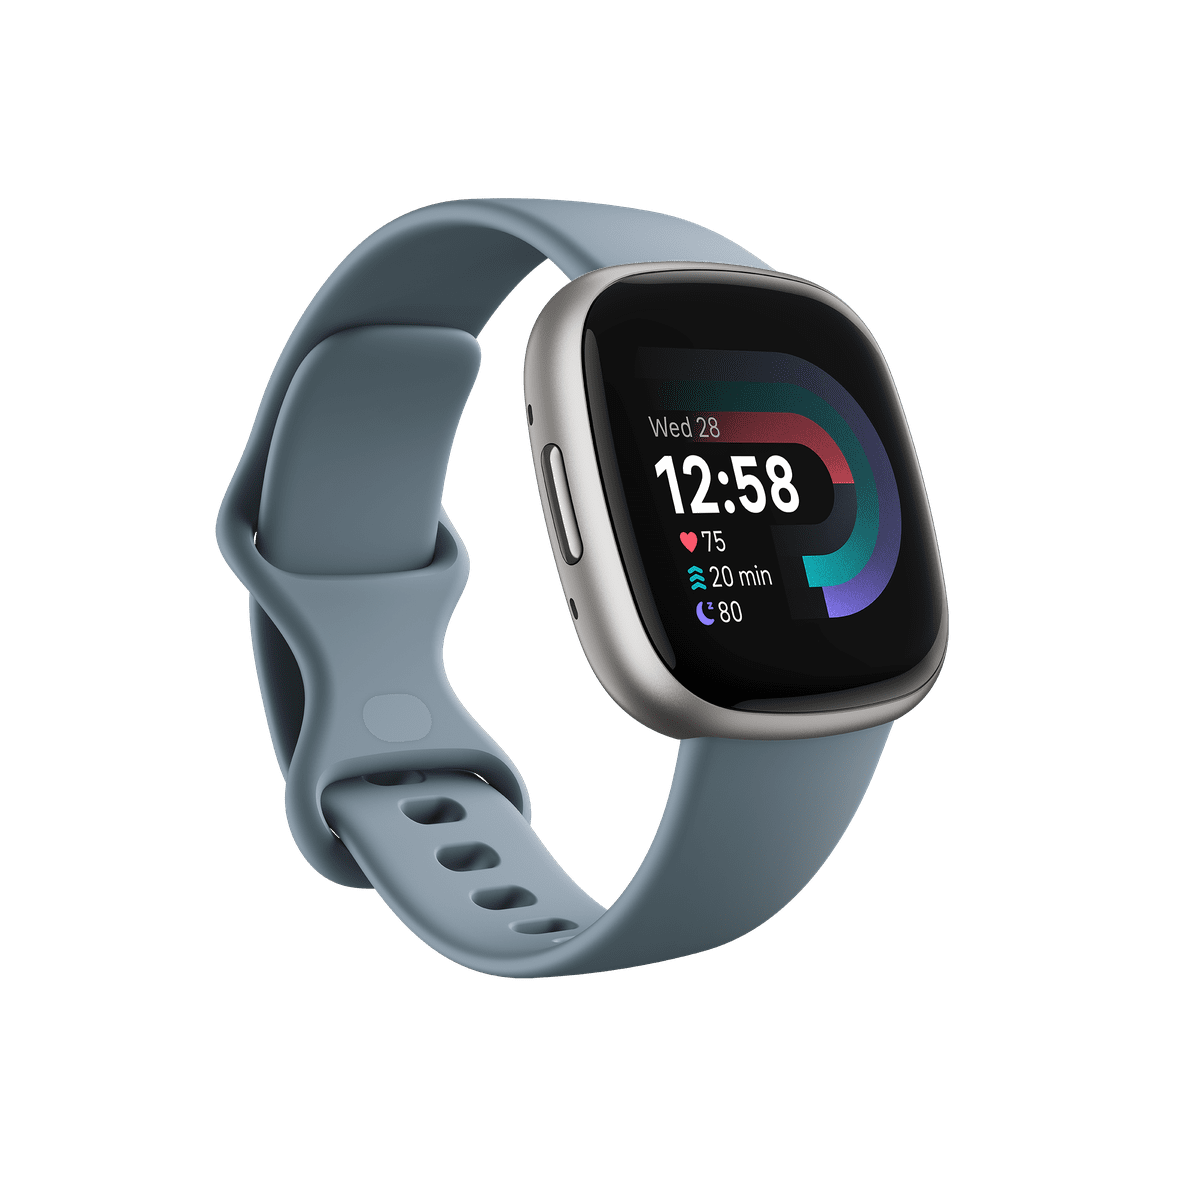 Wyświetlacz Fitbit Versa pokazujący tarczę zegarka